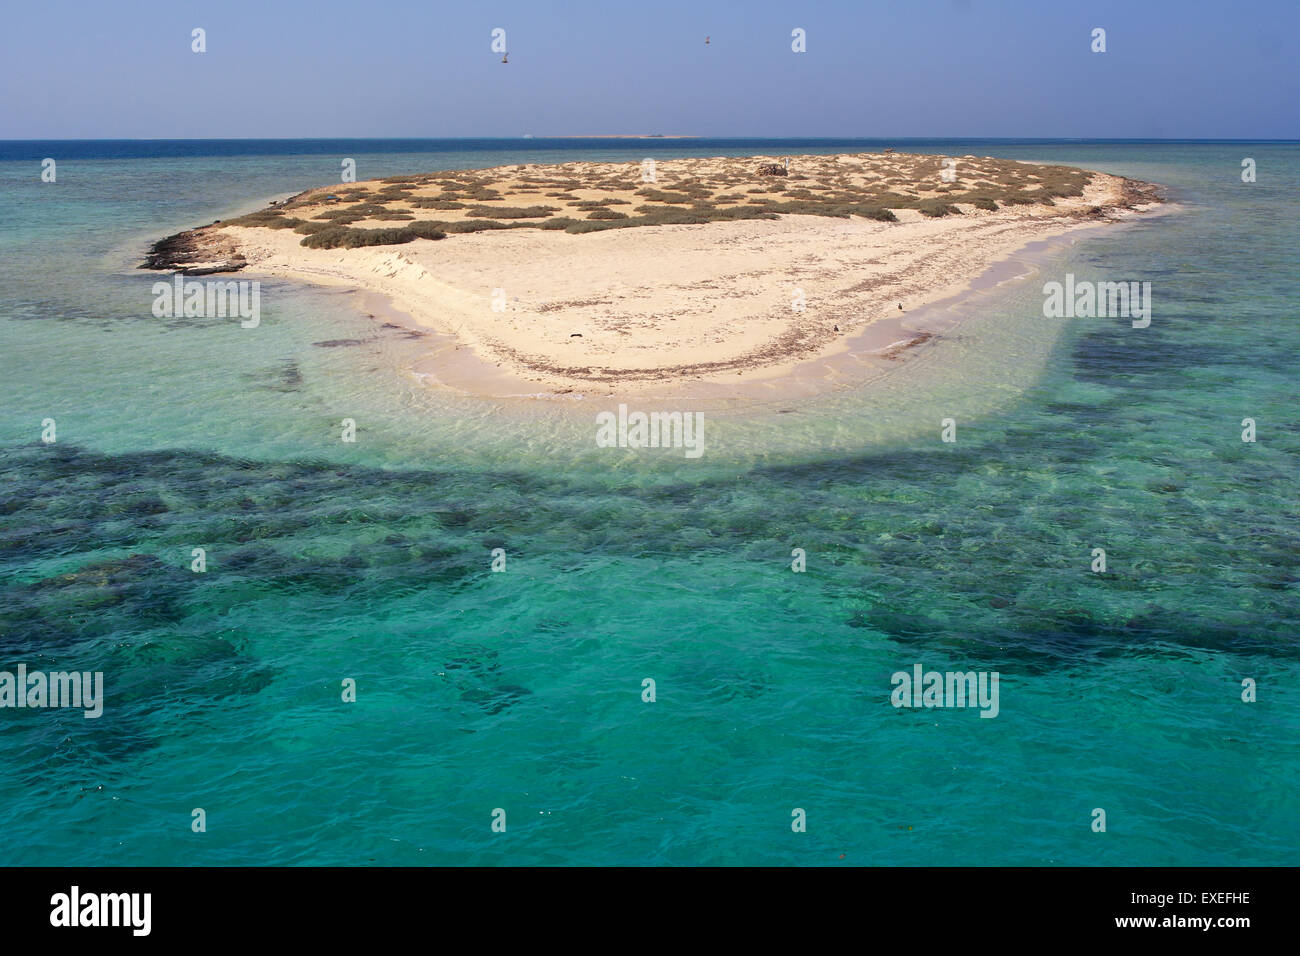 Le paradis de l'atoll des îles Qulaan en Mer Rouge Egypte Hamada Banque D'Images